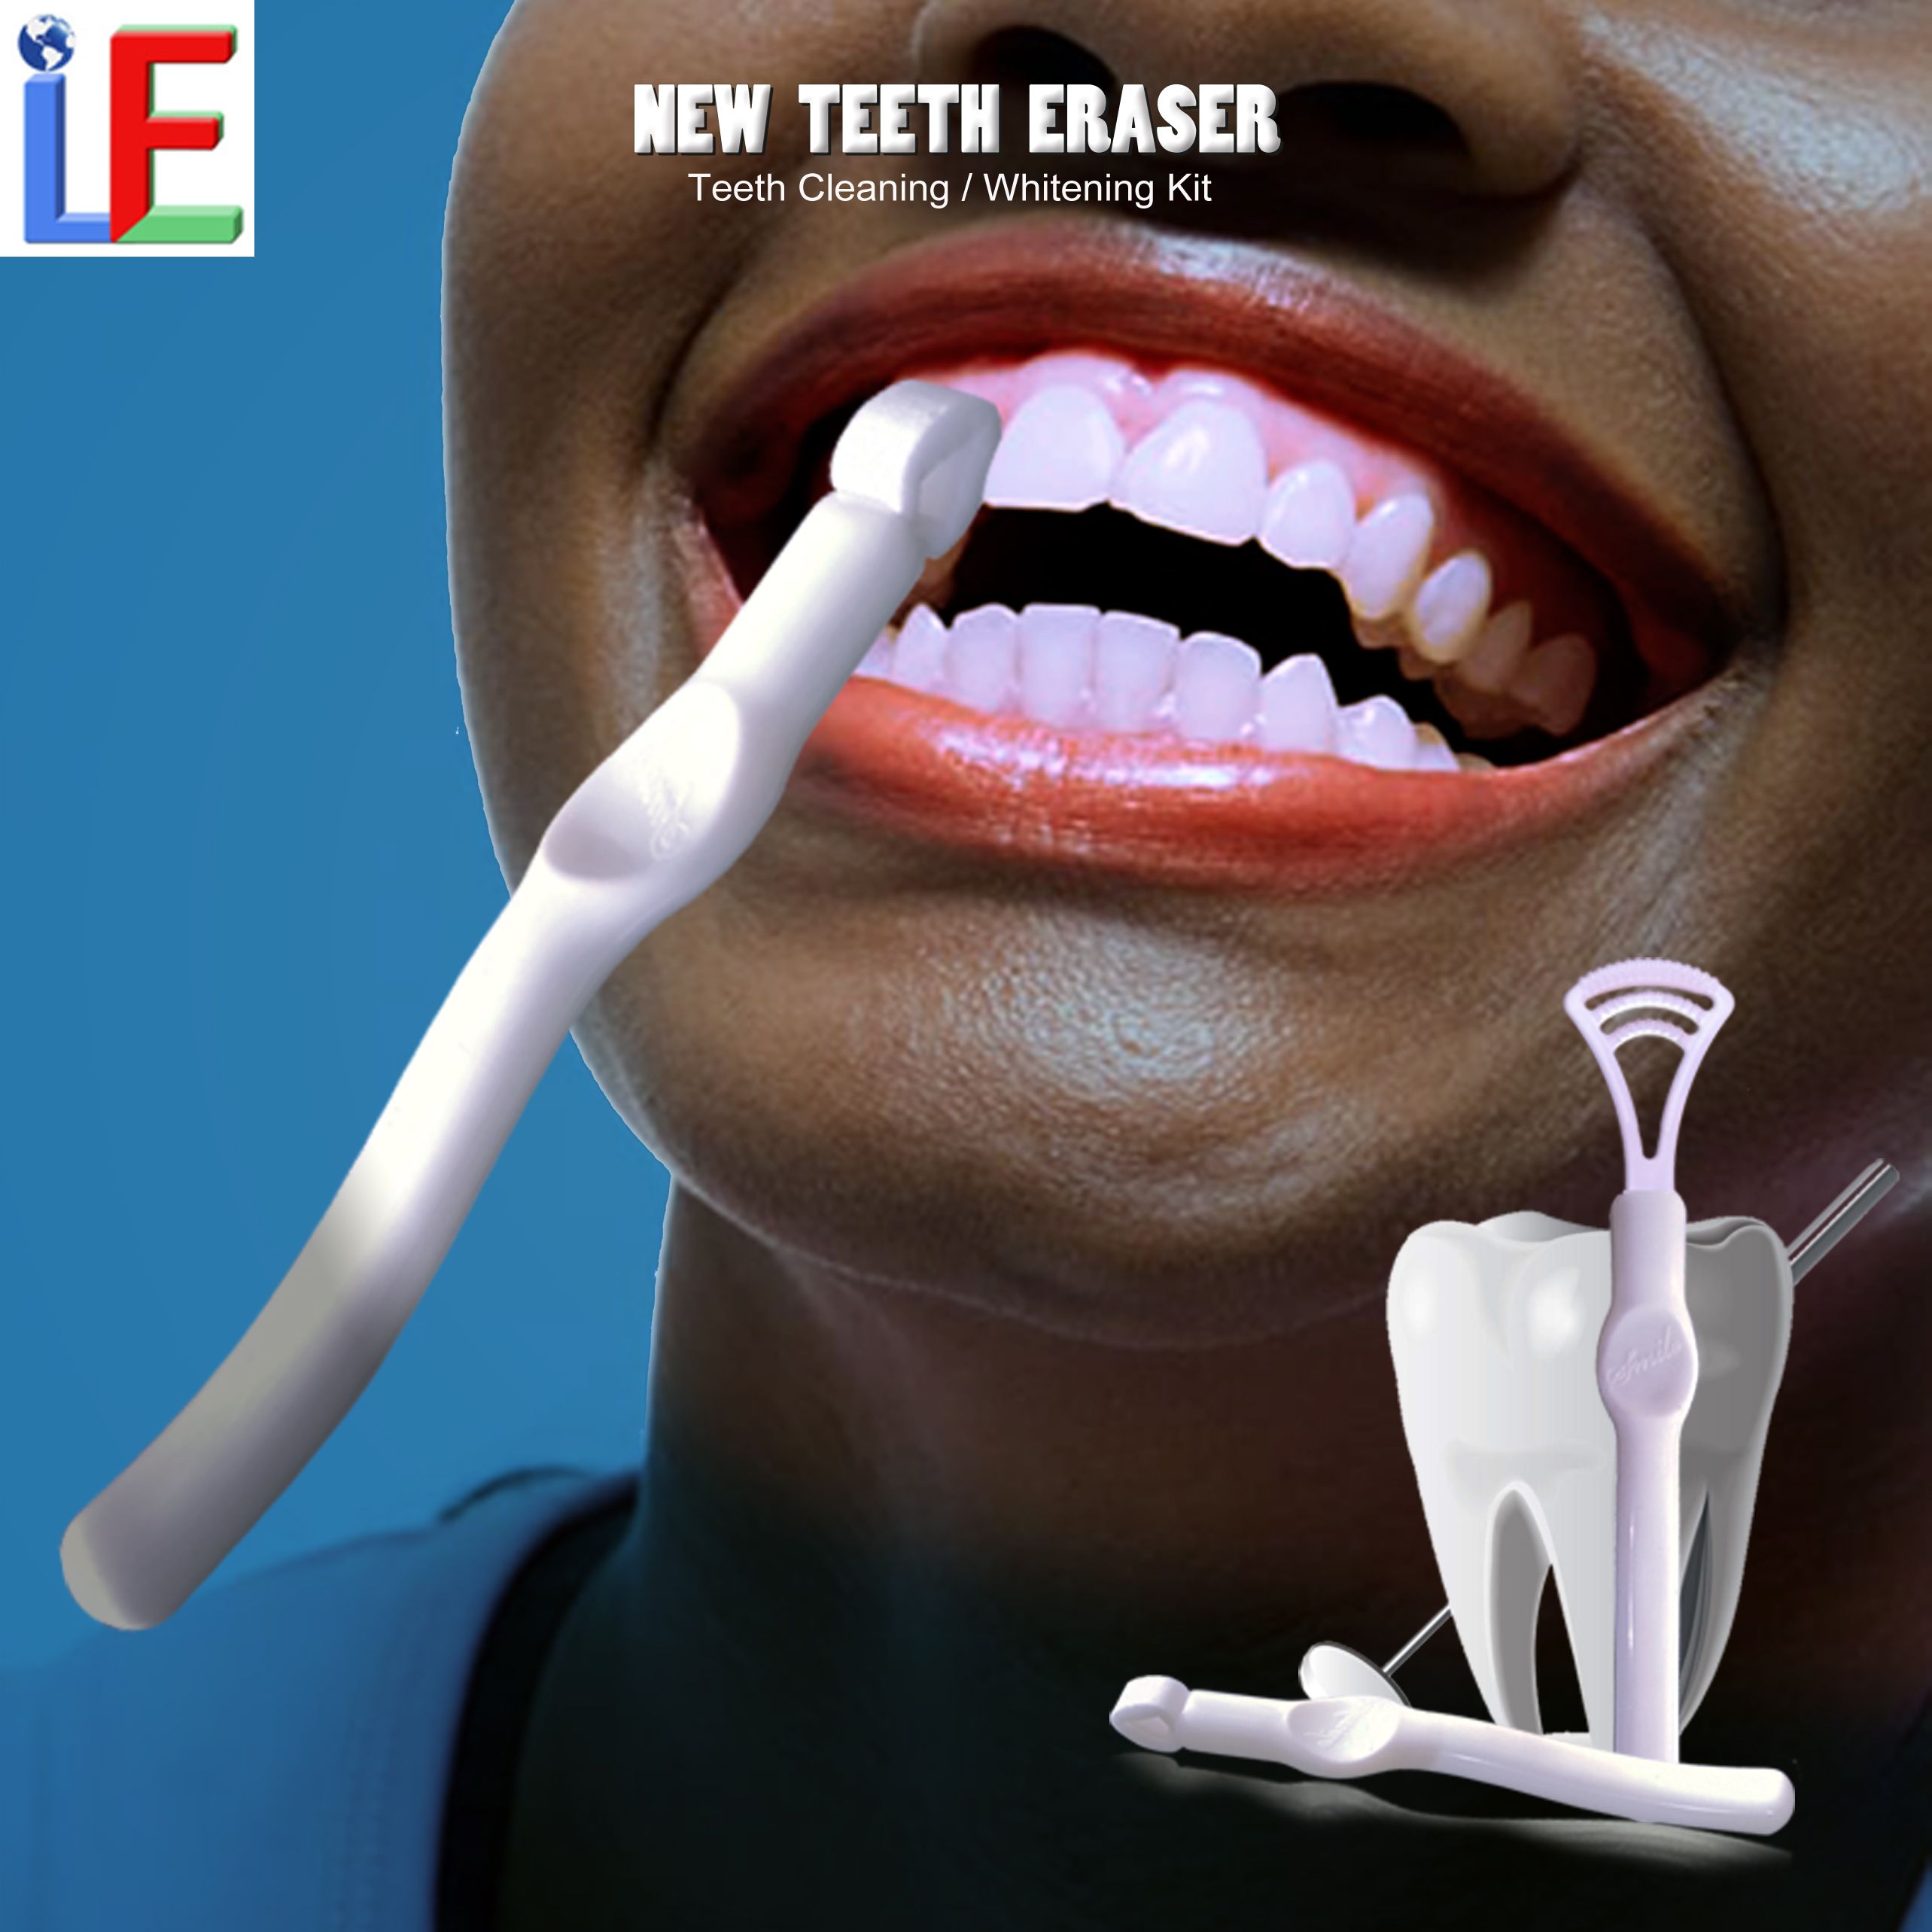 热销口腔卫生用品新型牙齿橡皮擦牙齿清洁套装